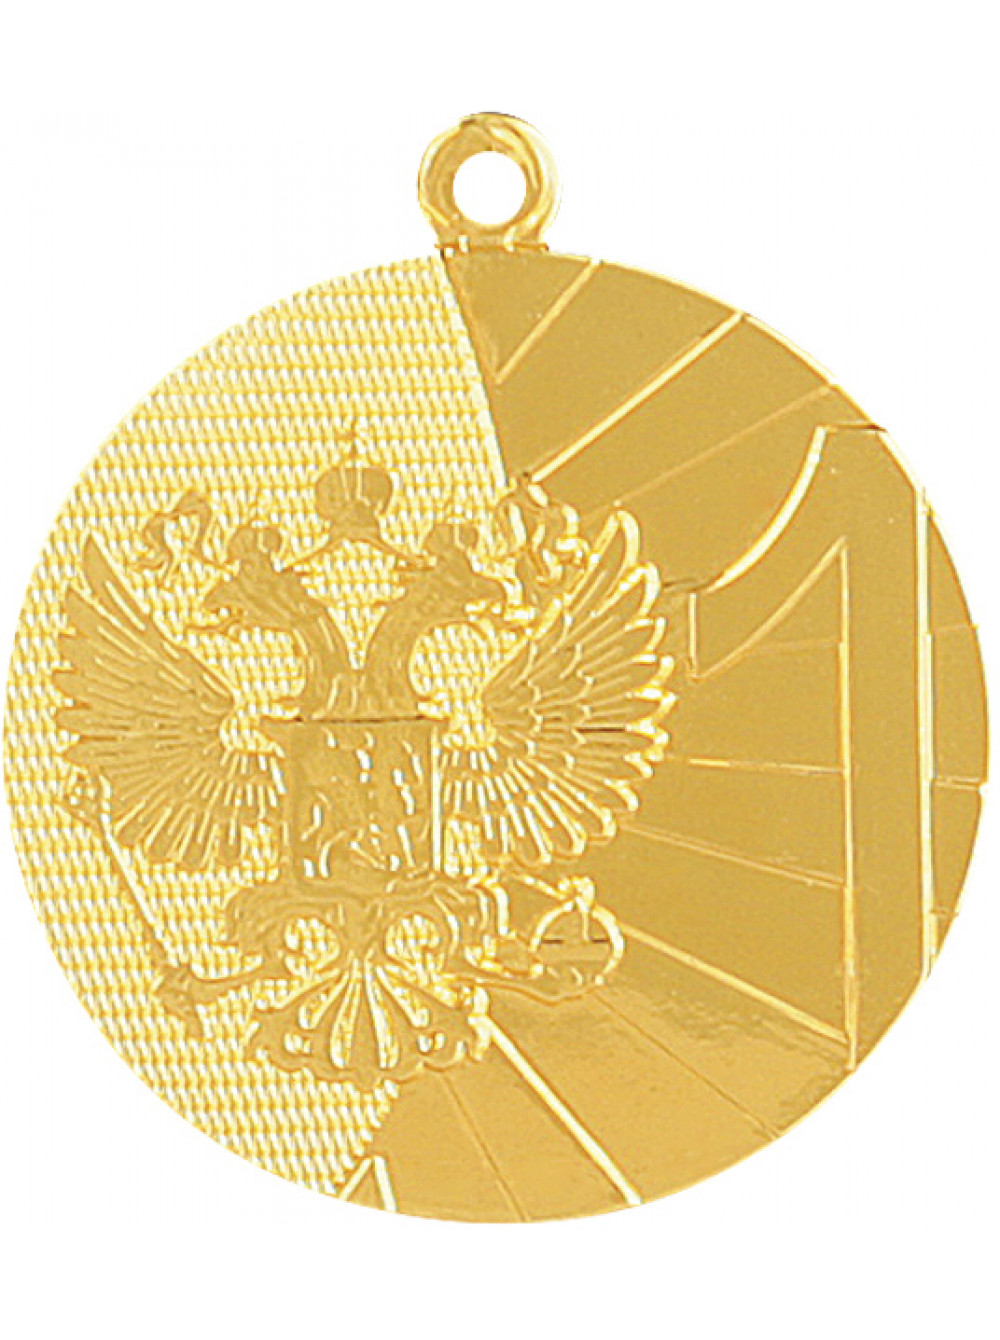 Медали награды купить. Медаль MMC 8040. Медаль 1 место mmc8040/g 40 g - 2мм. Медаль MMA 5012. Медаль наградная.